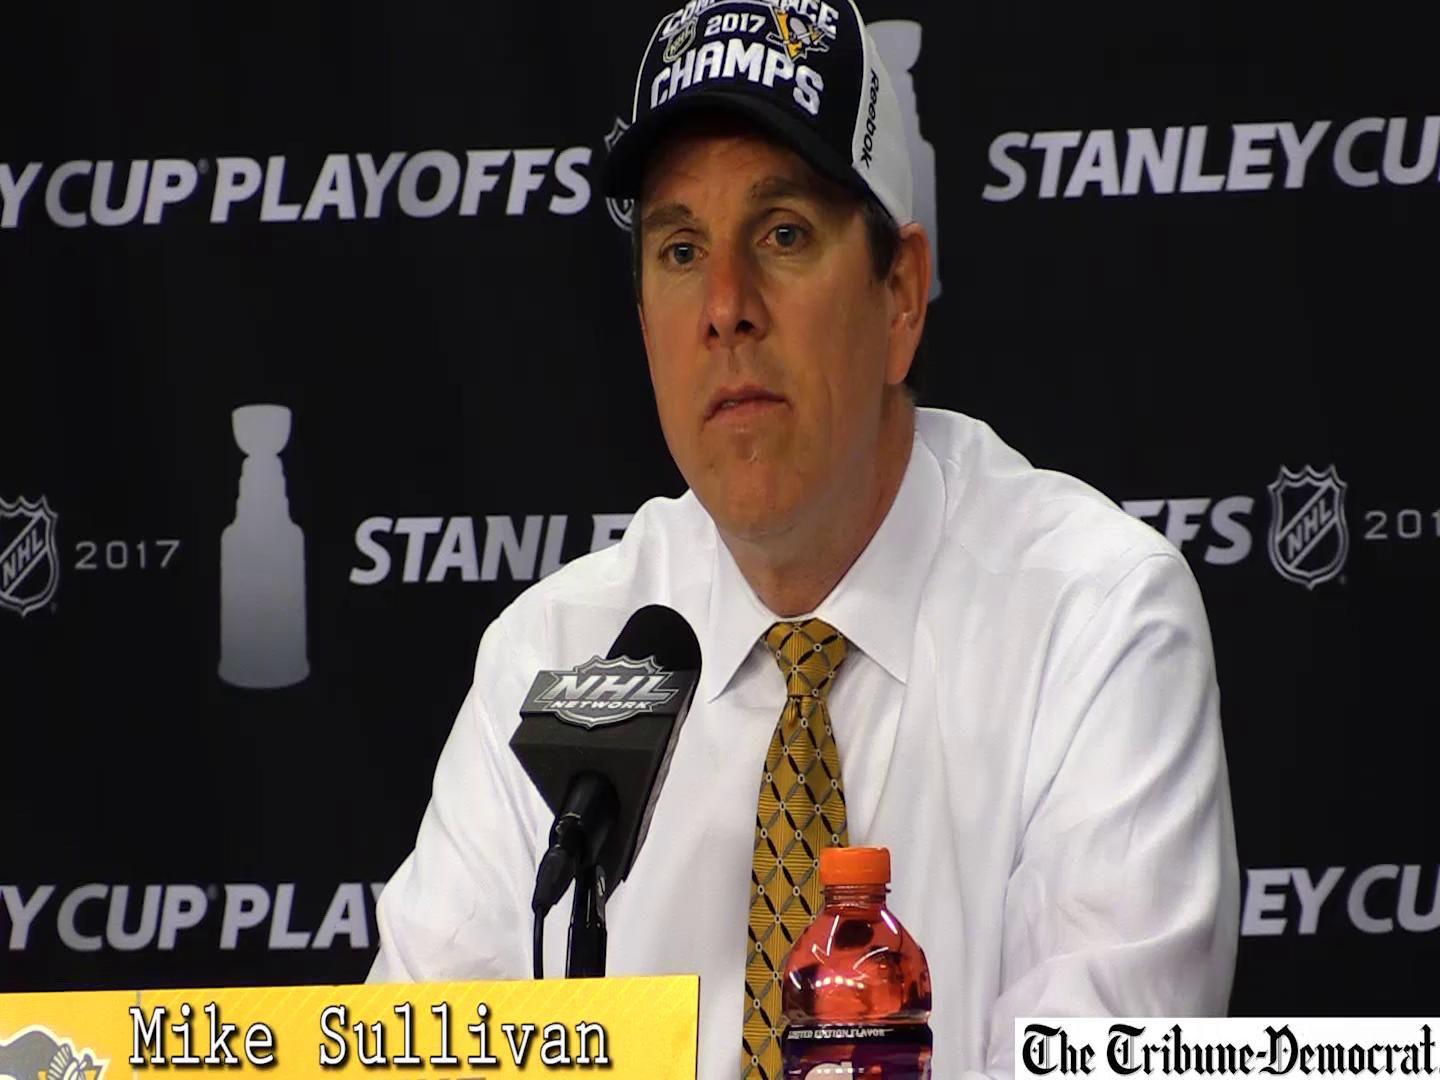 NHL roundup: Chris Kunitz scores twice as Penguins cruise - The Boston Globe